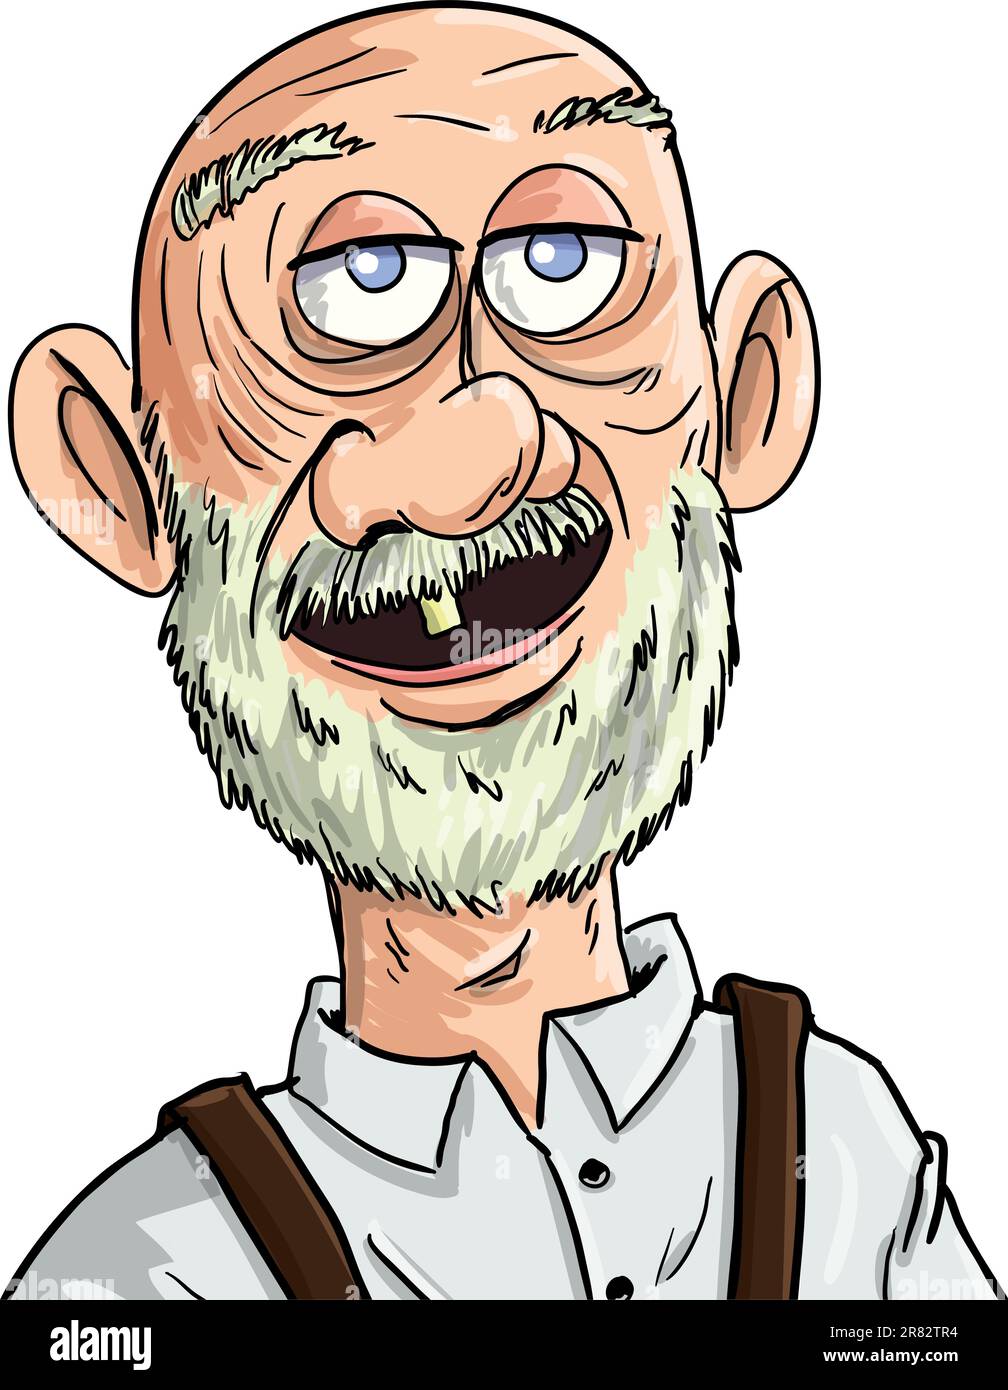 Cartoon alter Mann mit einem Zahn. Isoliert Stock Vektor